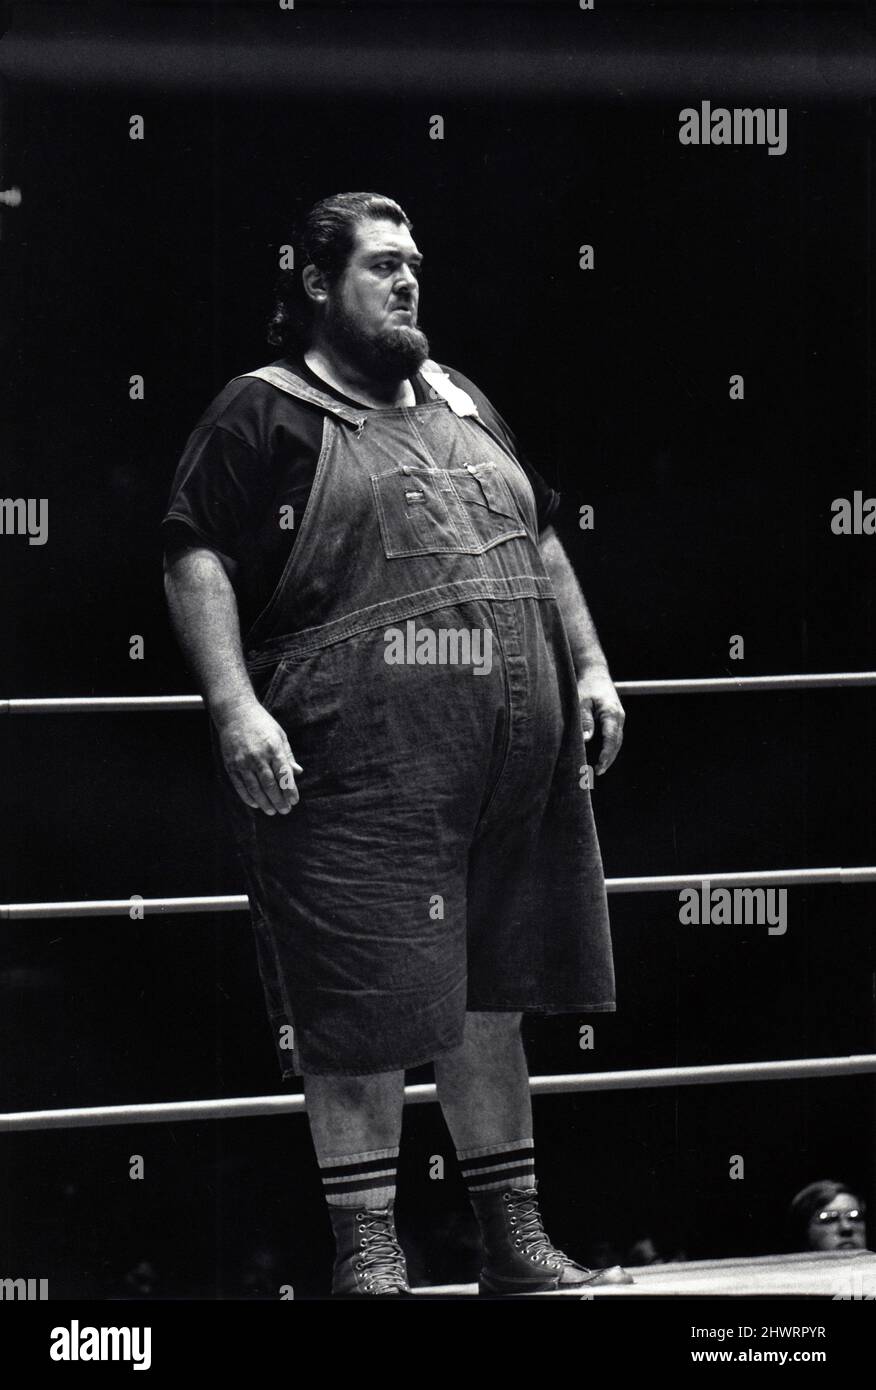 Der späte und große professionelle Wrestler, Haystacks Calhoun. Bei einem Spiel im Nassau Coliseum auf Long Island. Der geborene William Dee Calhoun wurde als 601 Pfund schwerer Mann angekündigt. Ca. 1975. Stockfoto